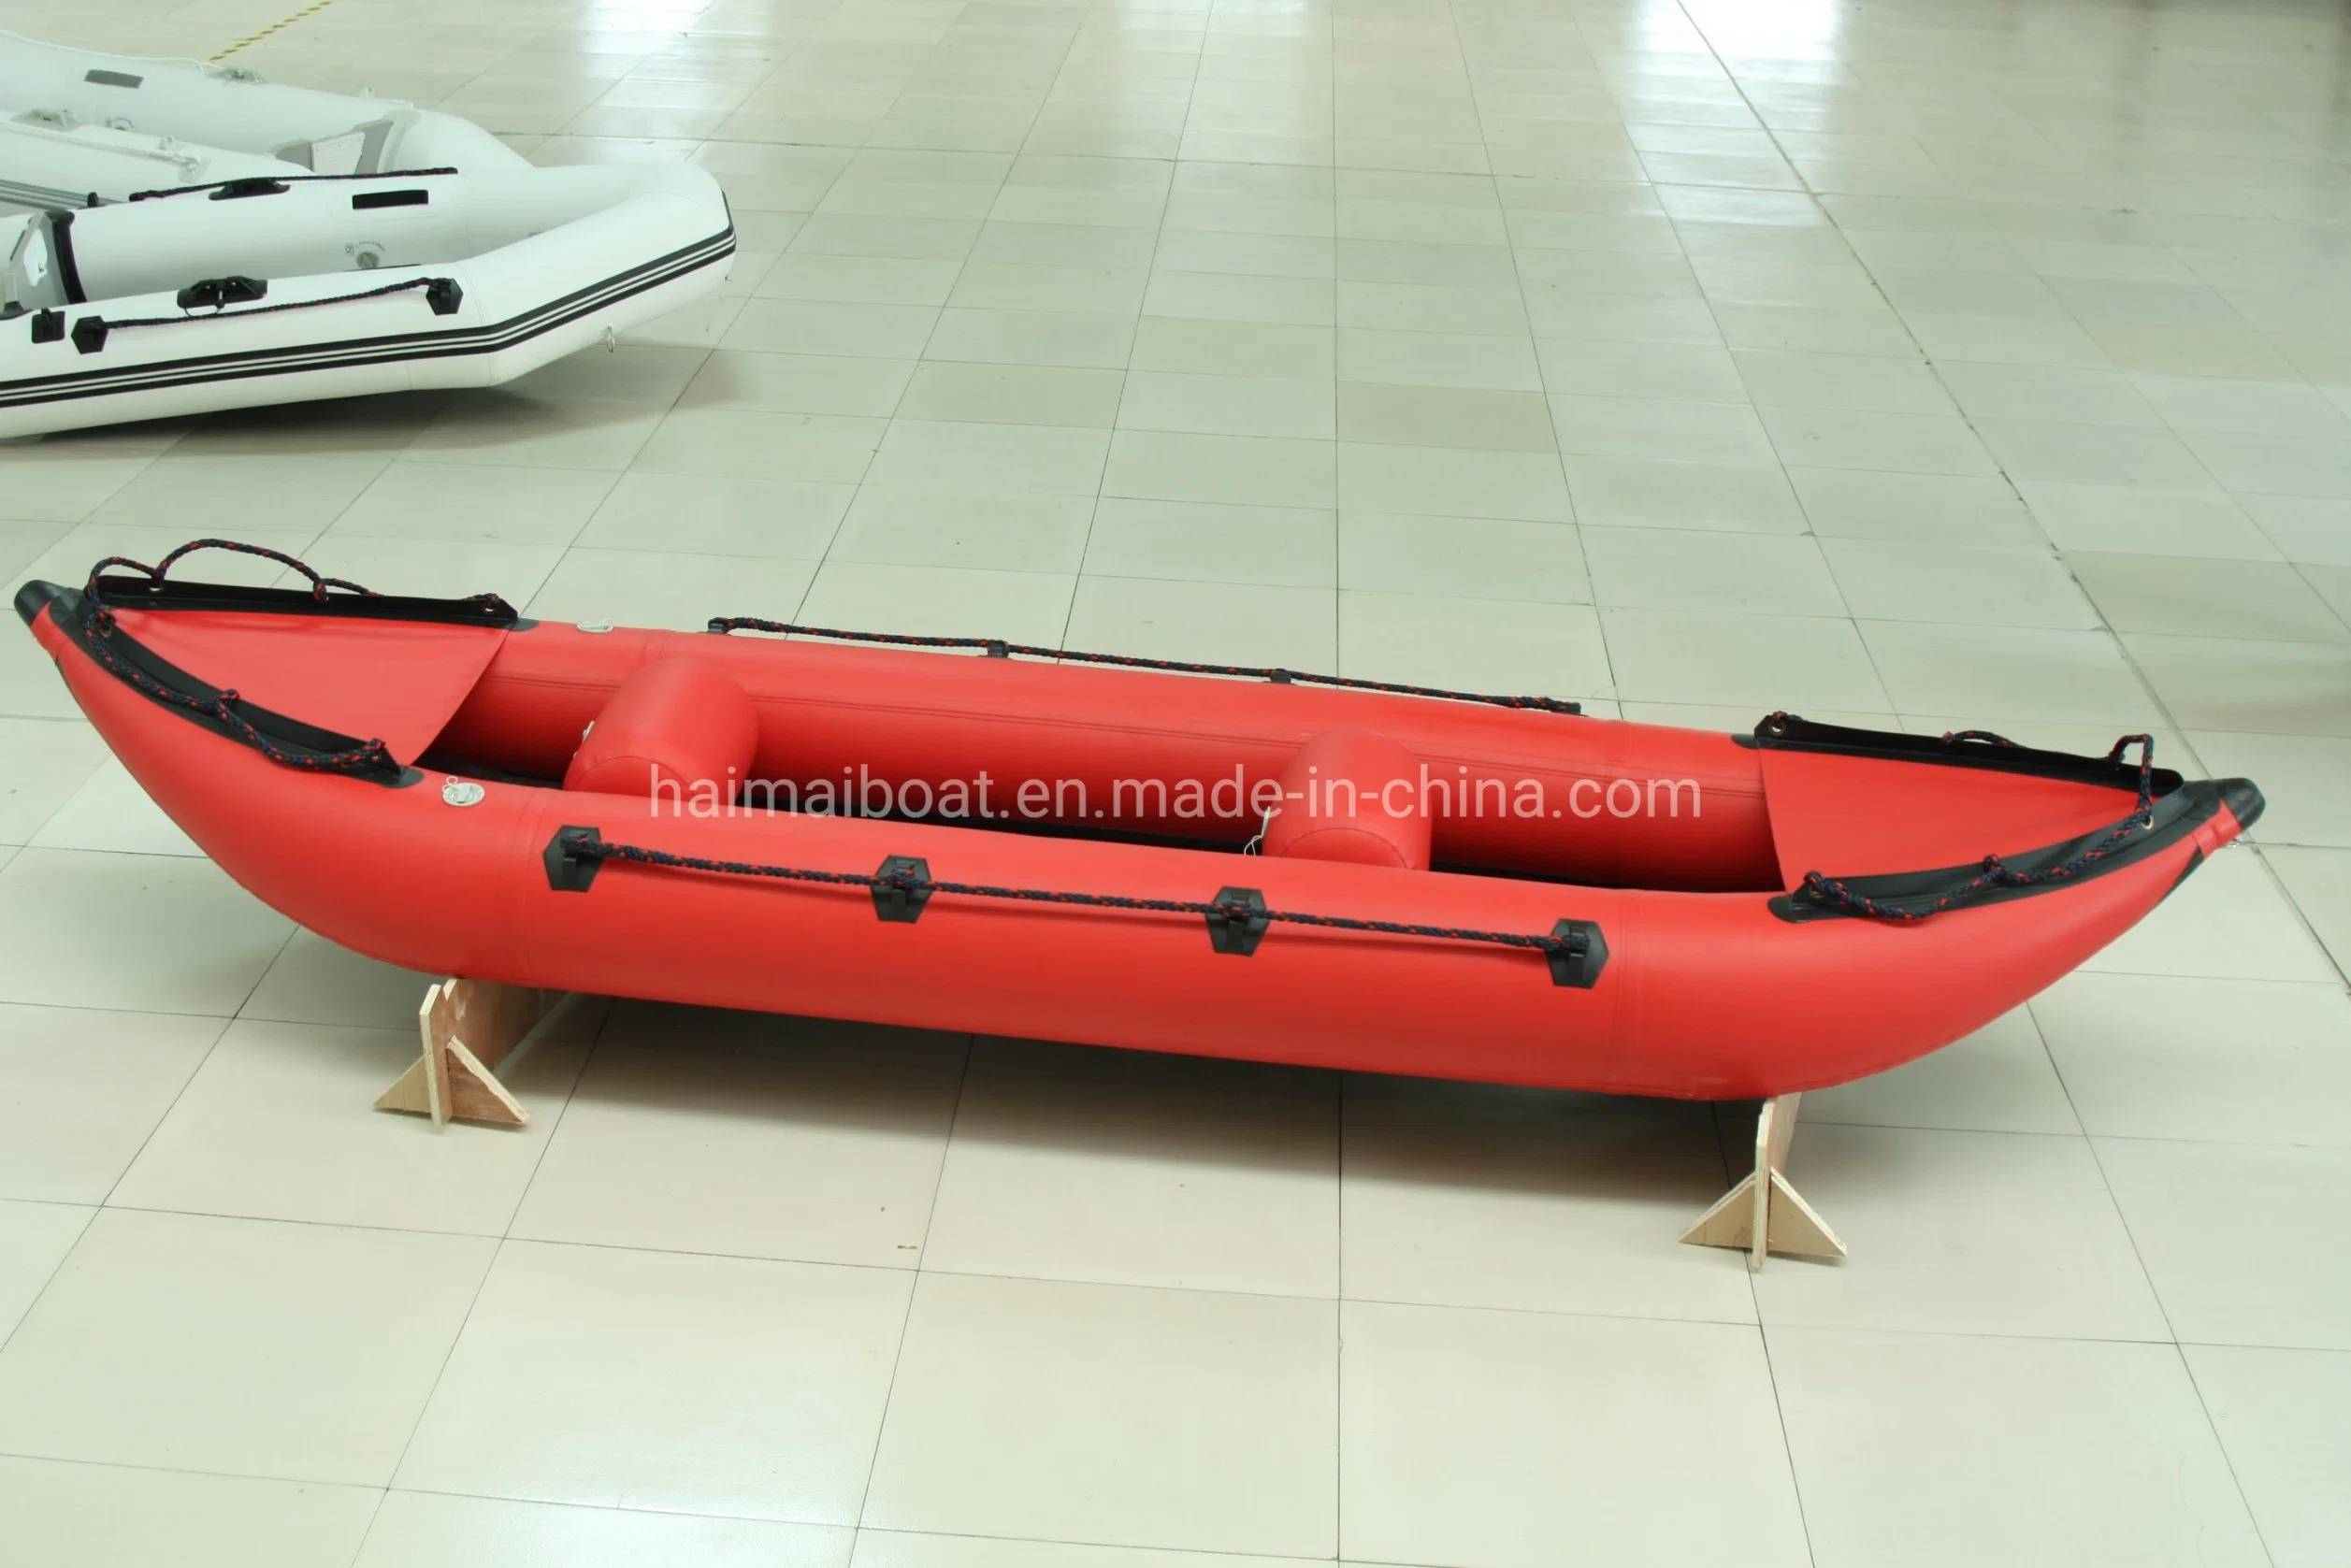 La Chine usine bateau professionnel 12pieds 3.65m'Hypalon bateau gonflable en PVC kayak loisir PVC Bateau Bateau de plaisance River Boat Water Rapids River Boat Bateau